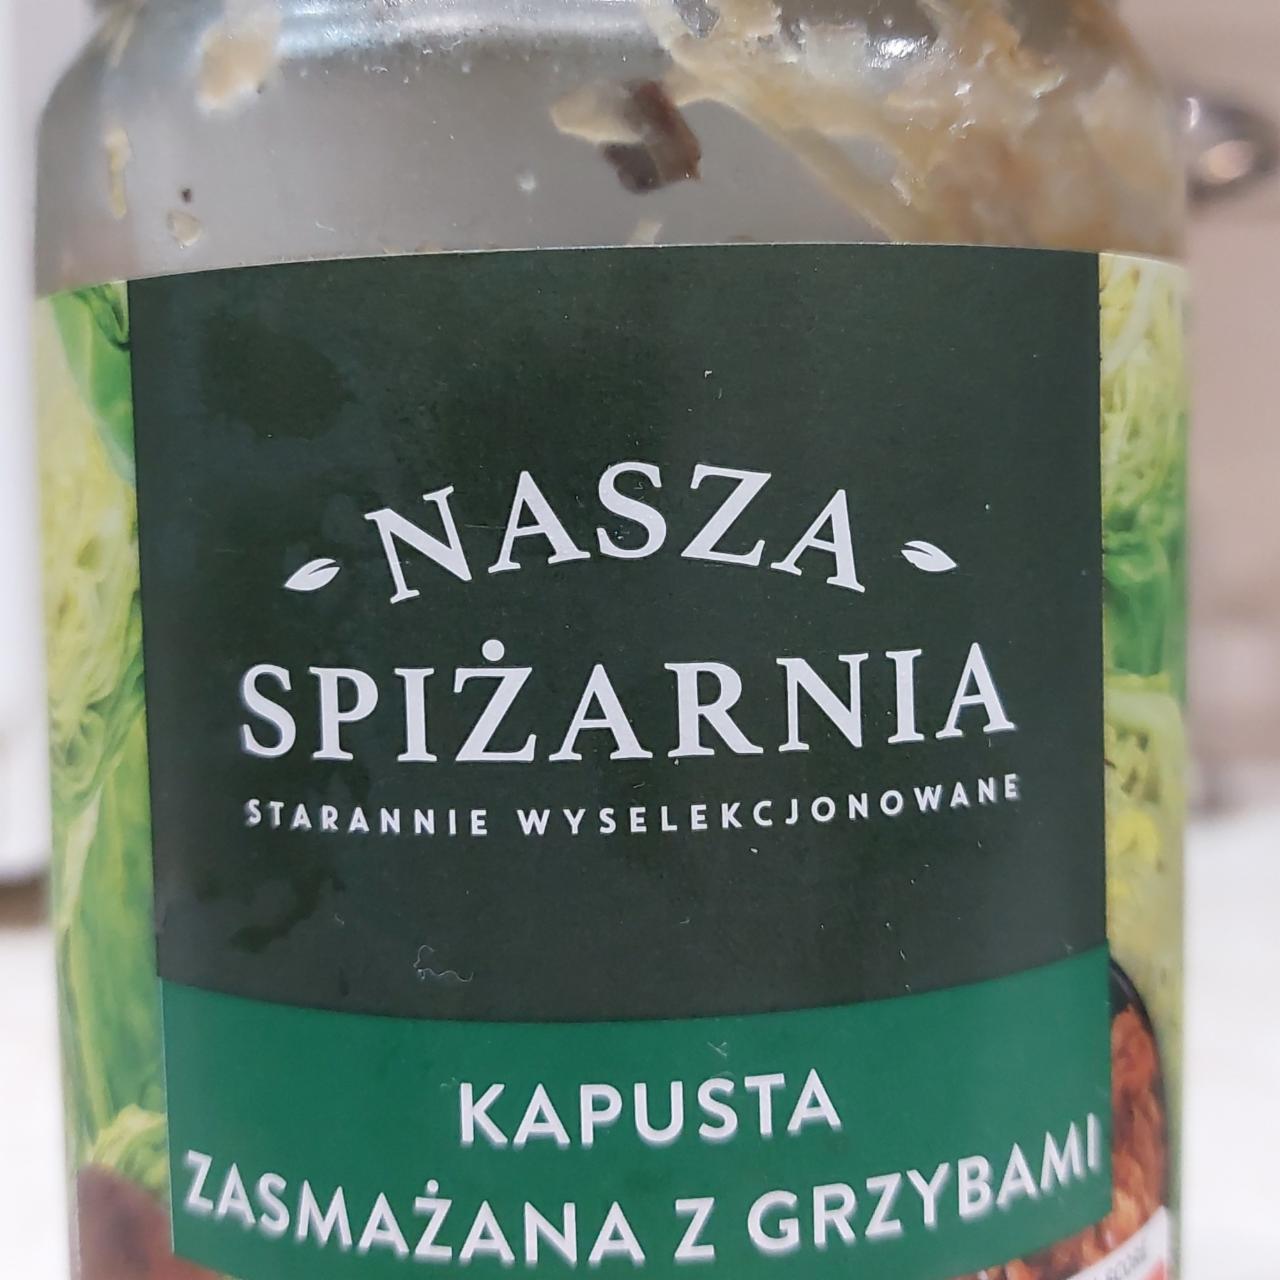 Фото - Капуста смажена з грибами Nasza Spizarnia